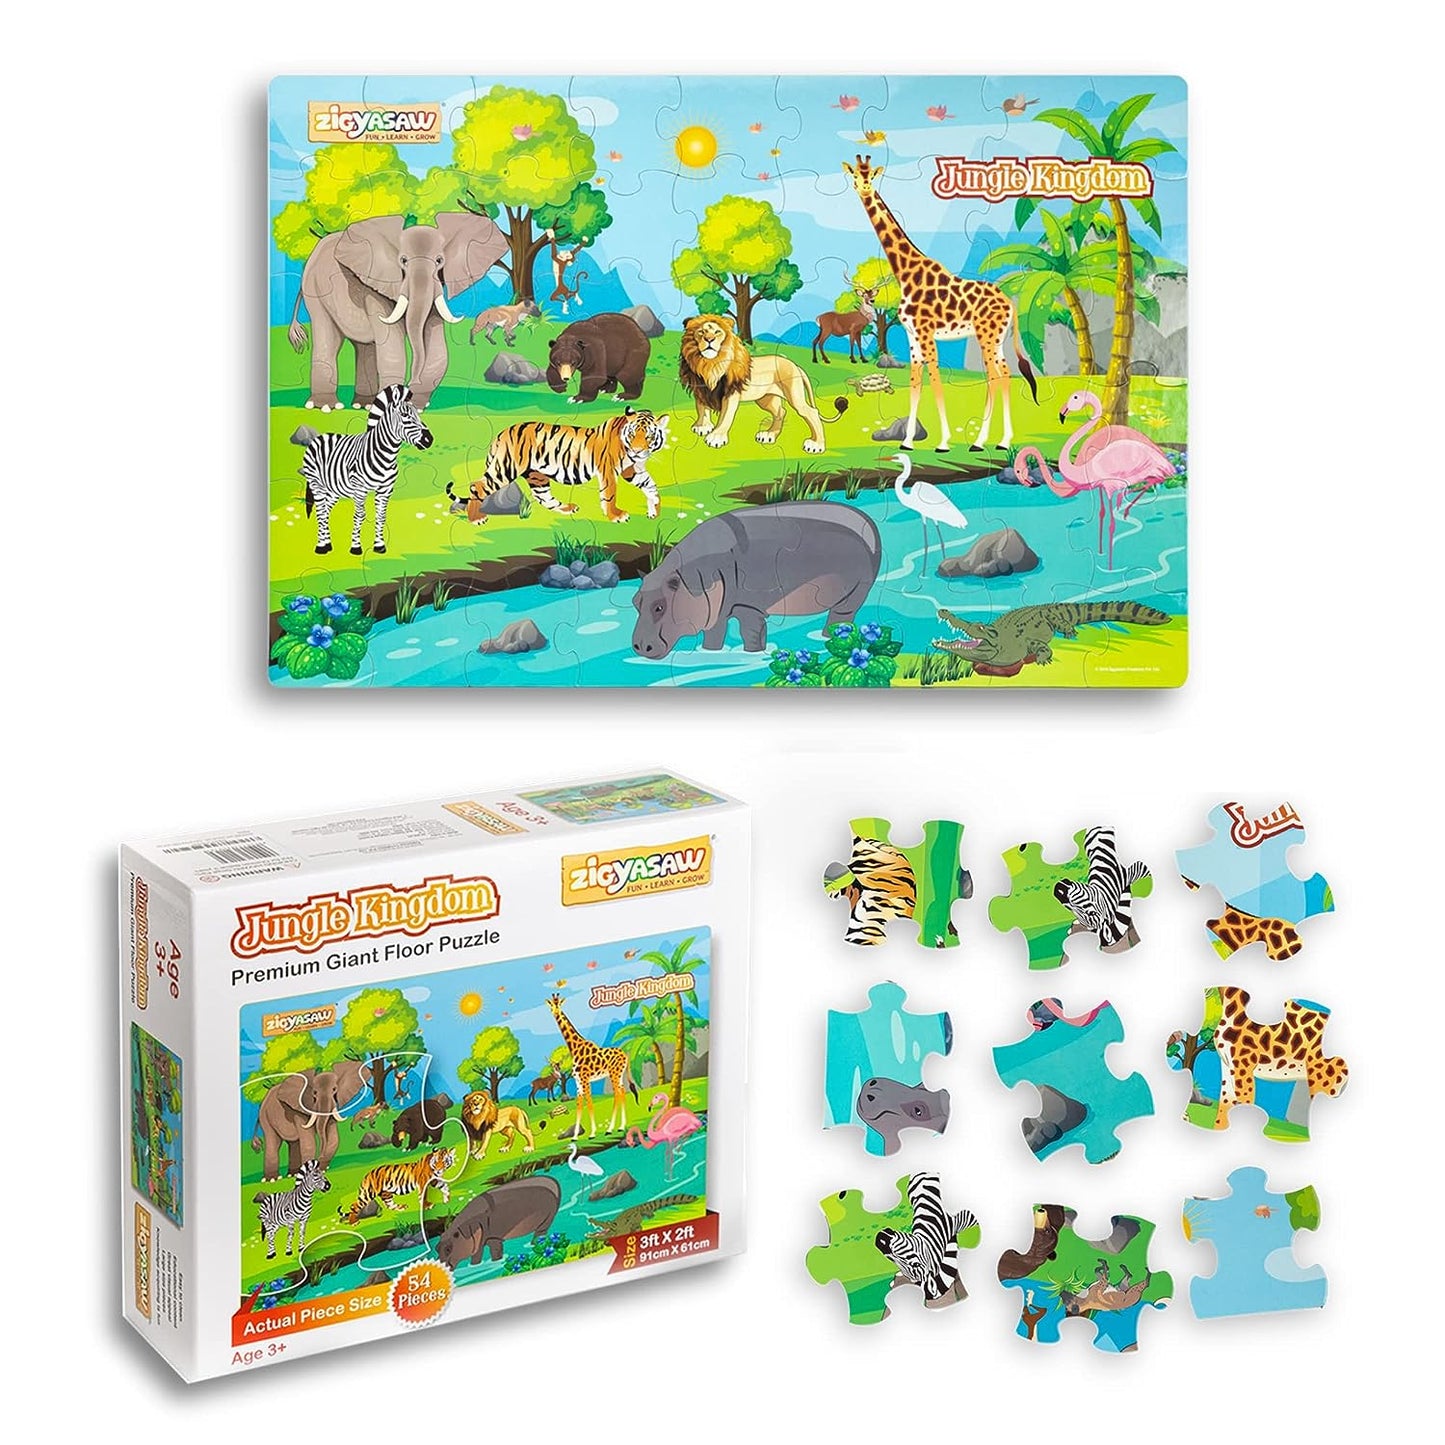 Jungle Kingdom - Premium Giant Floor Puzzle (54 Pieces)